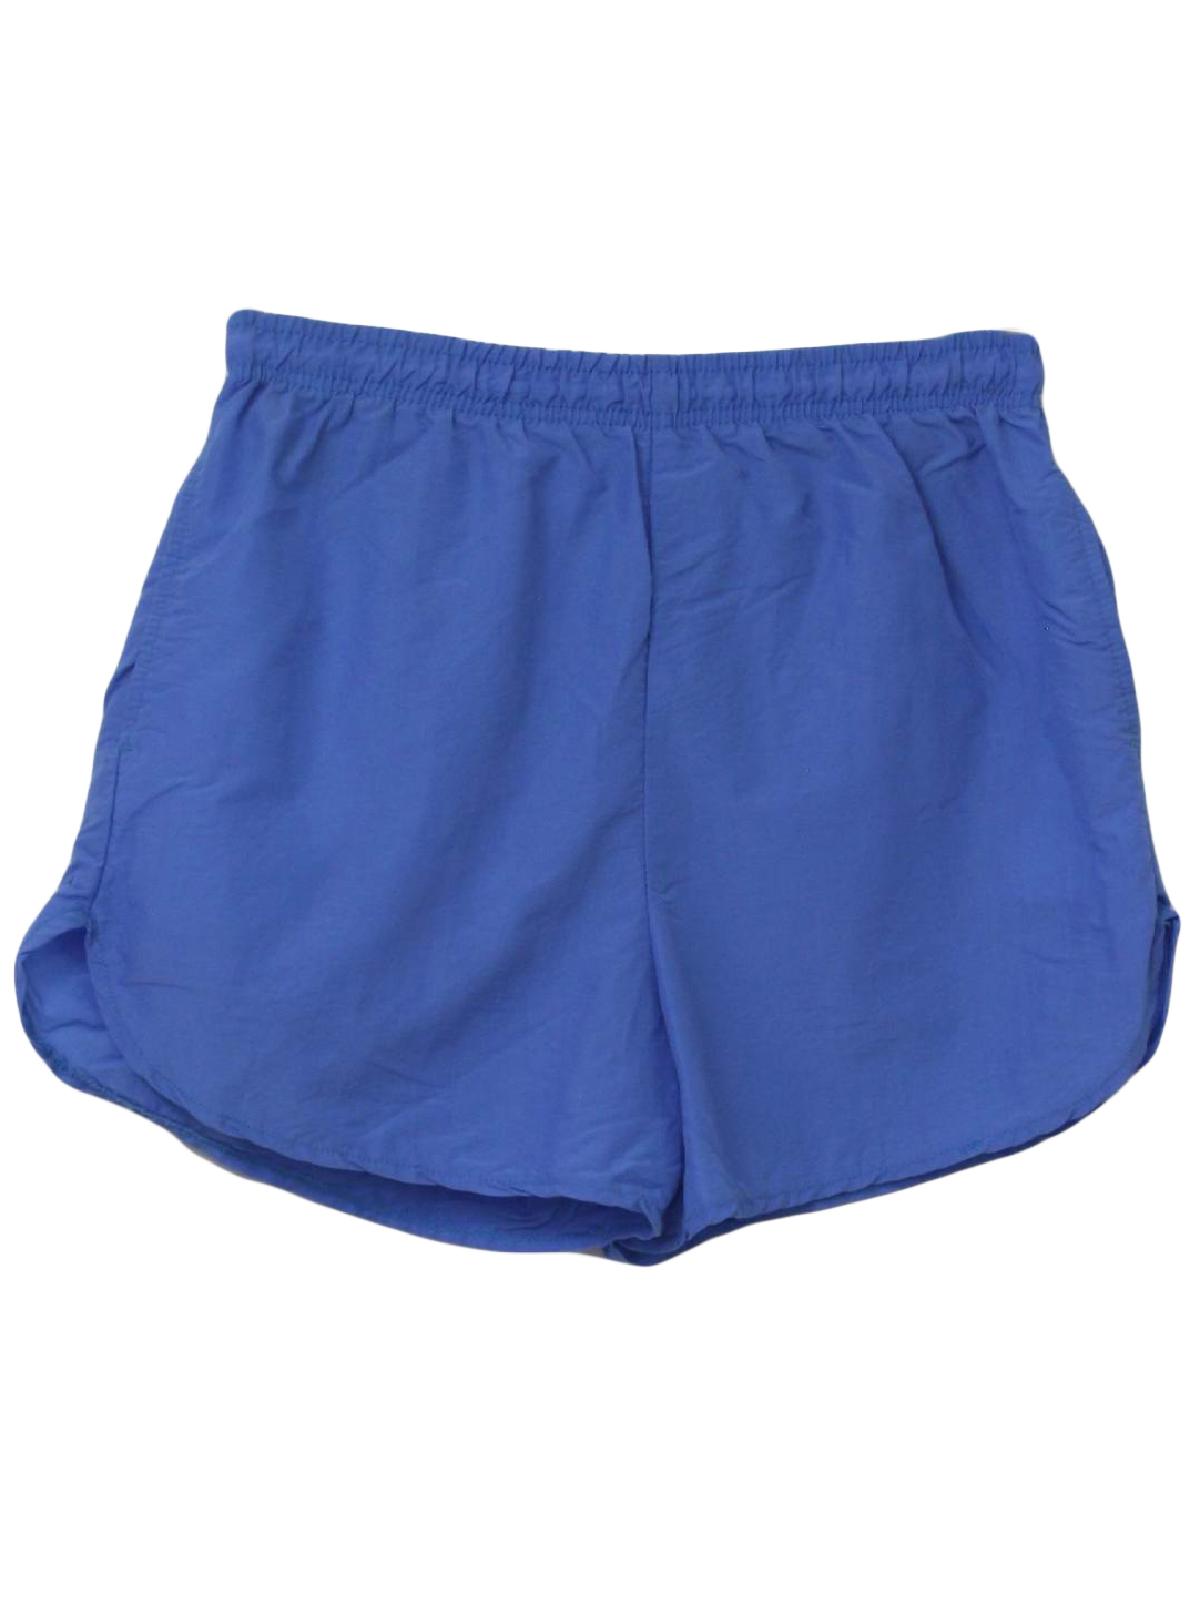 Le Cove 1980s Vintage Shorts: 80s -Le Cove- Unisex medium blue nylon ...